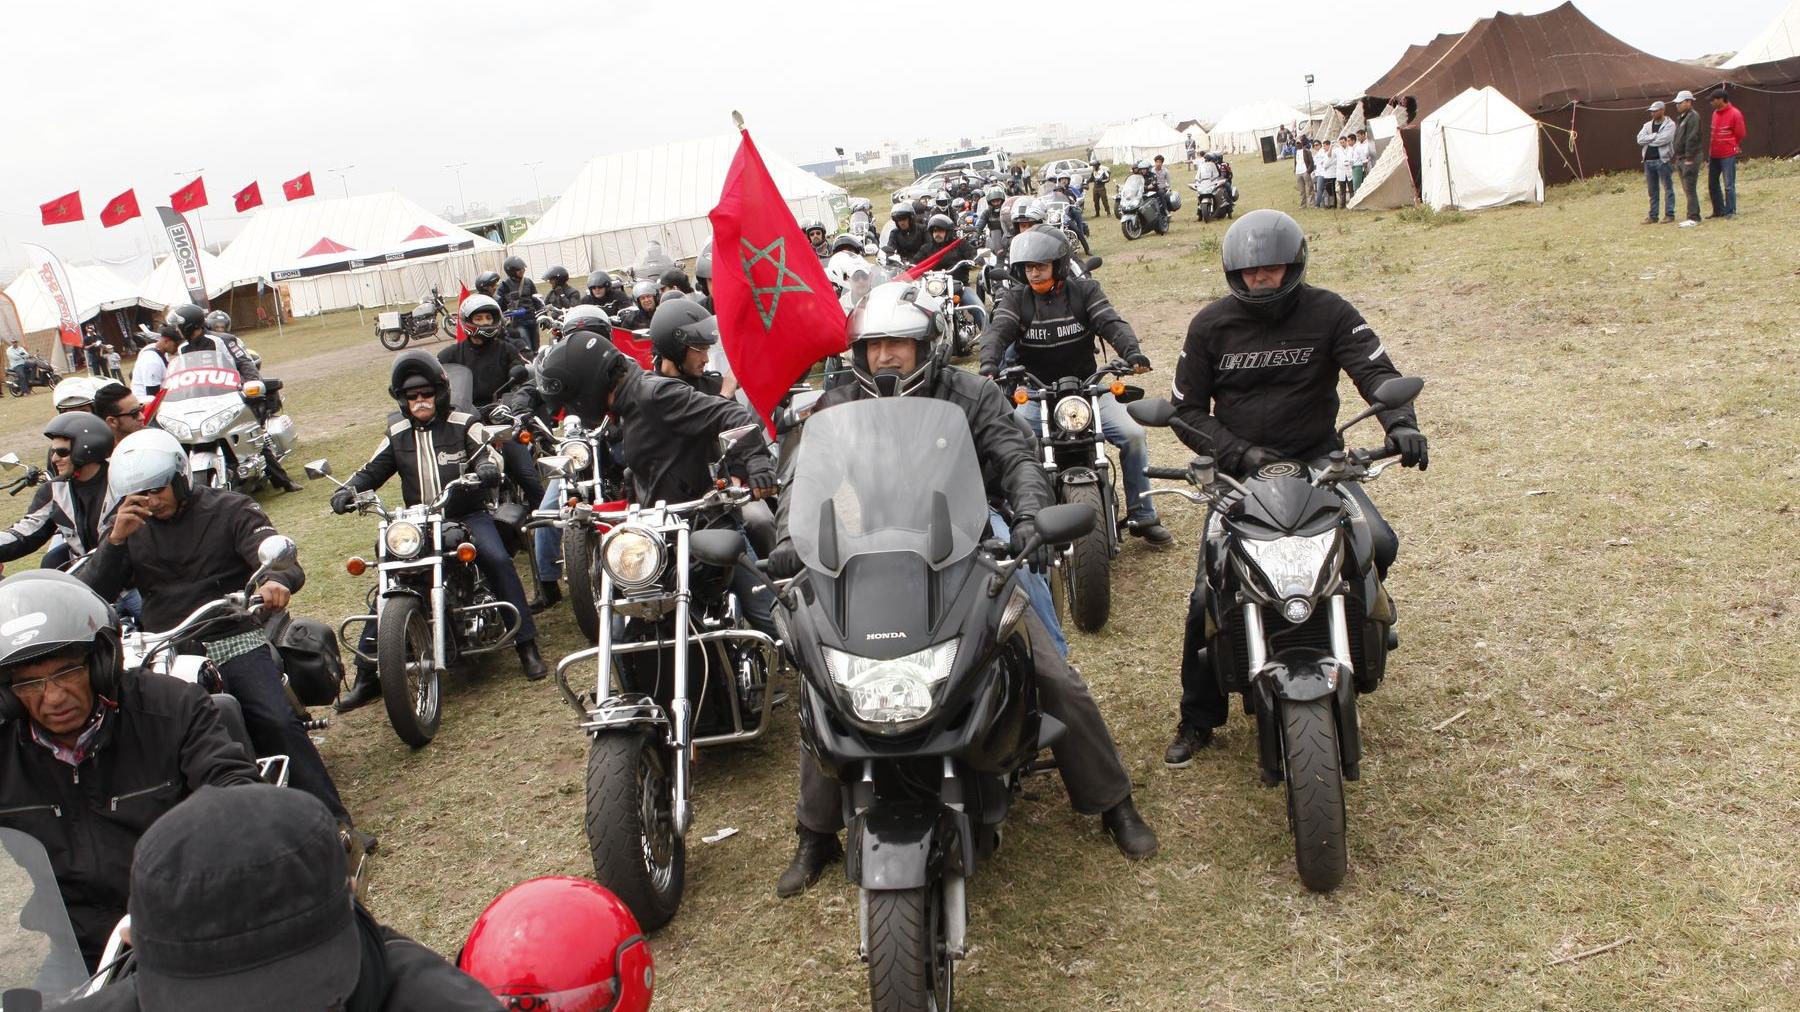 Les bikers sont prêts à "rouler des mécaniques" à travers la métropole
